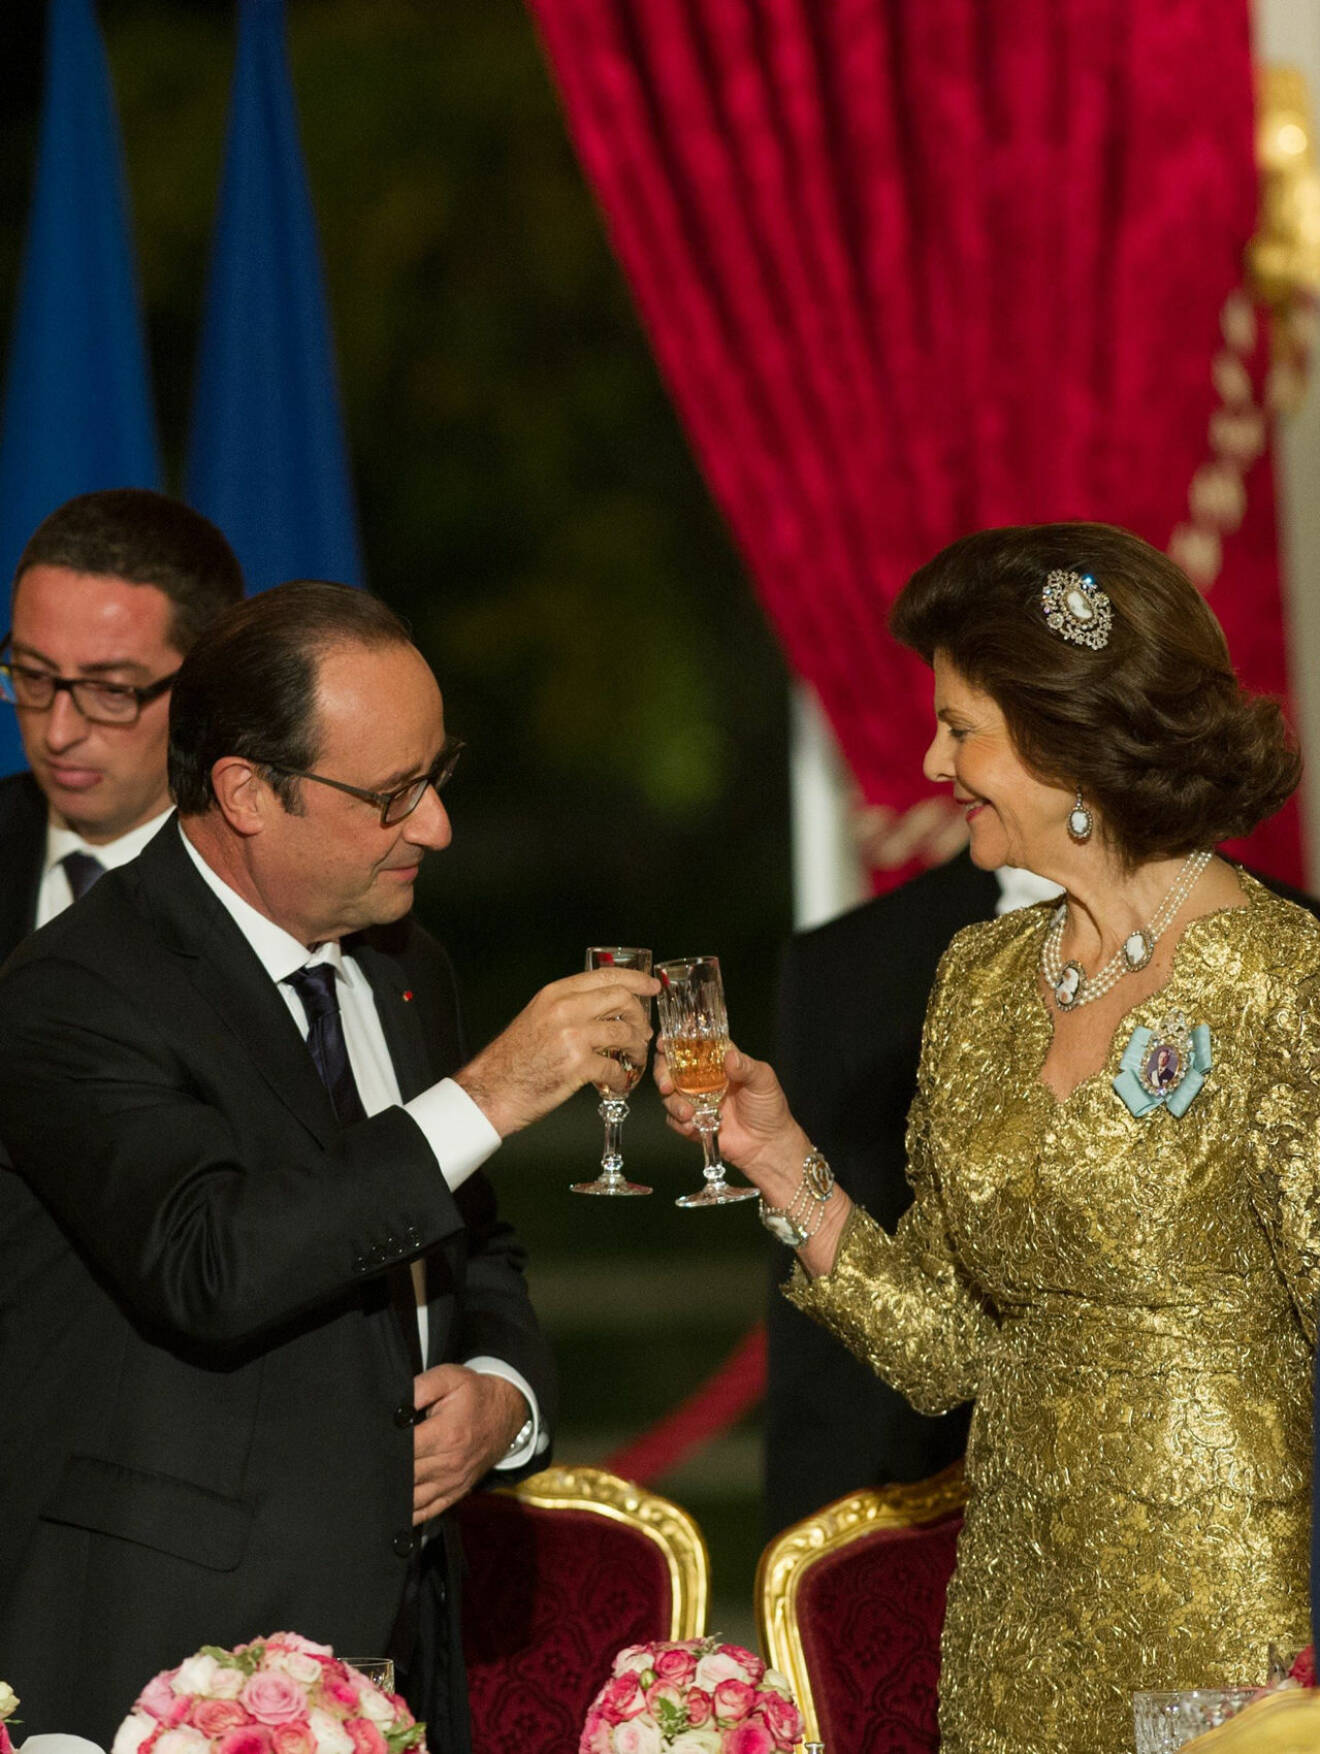 Drottning Silvia President Hollande